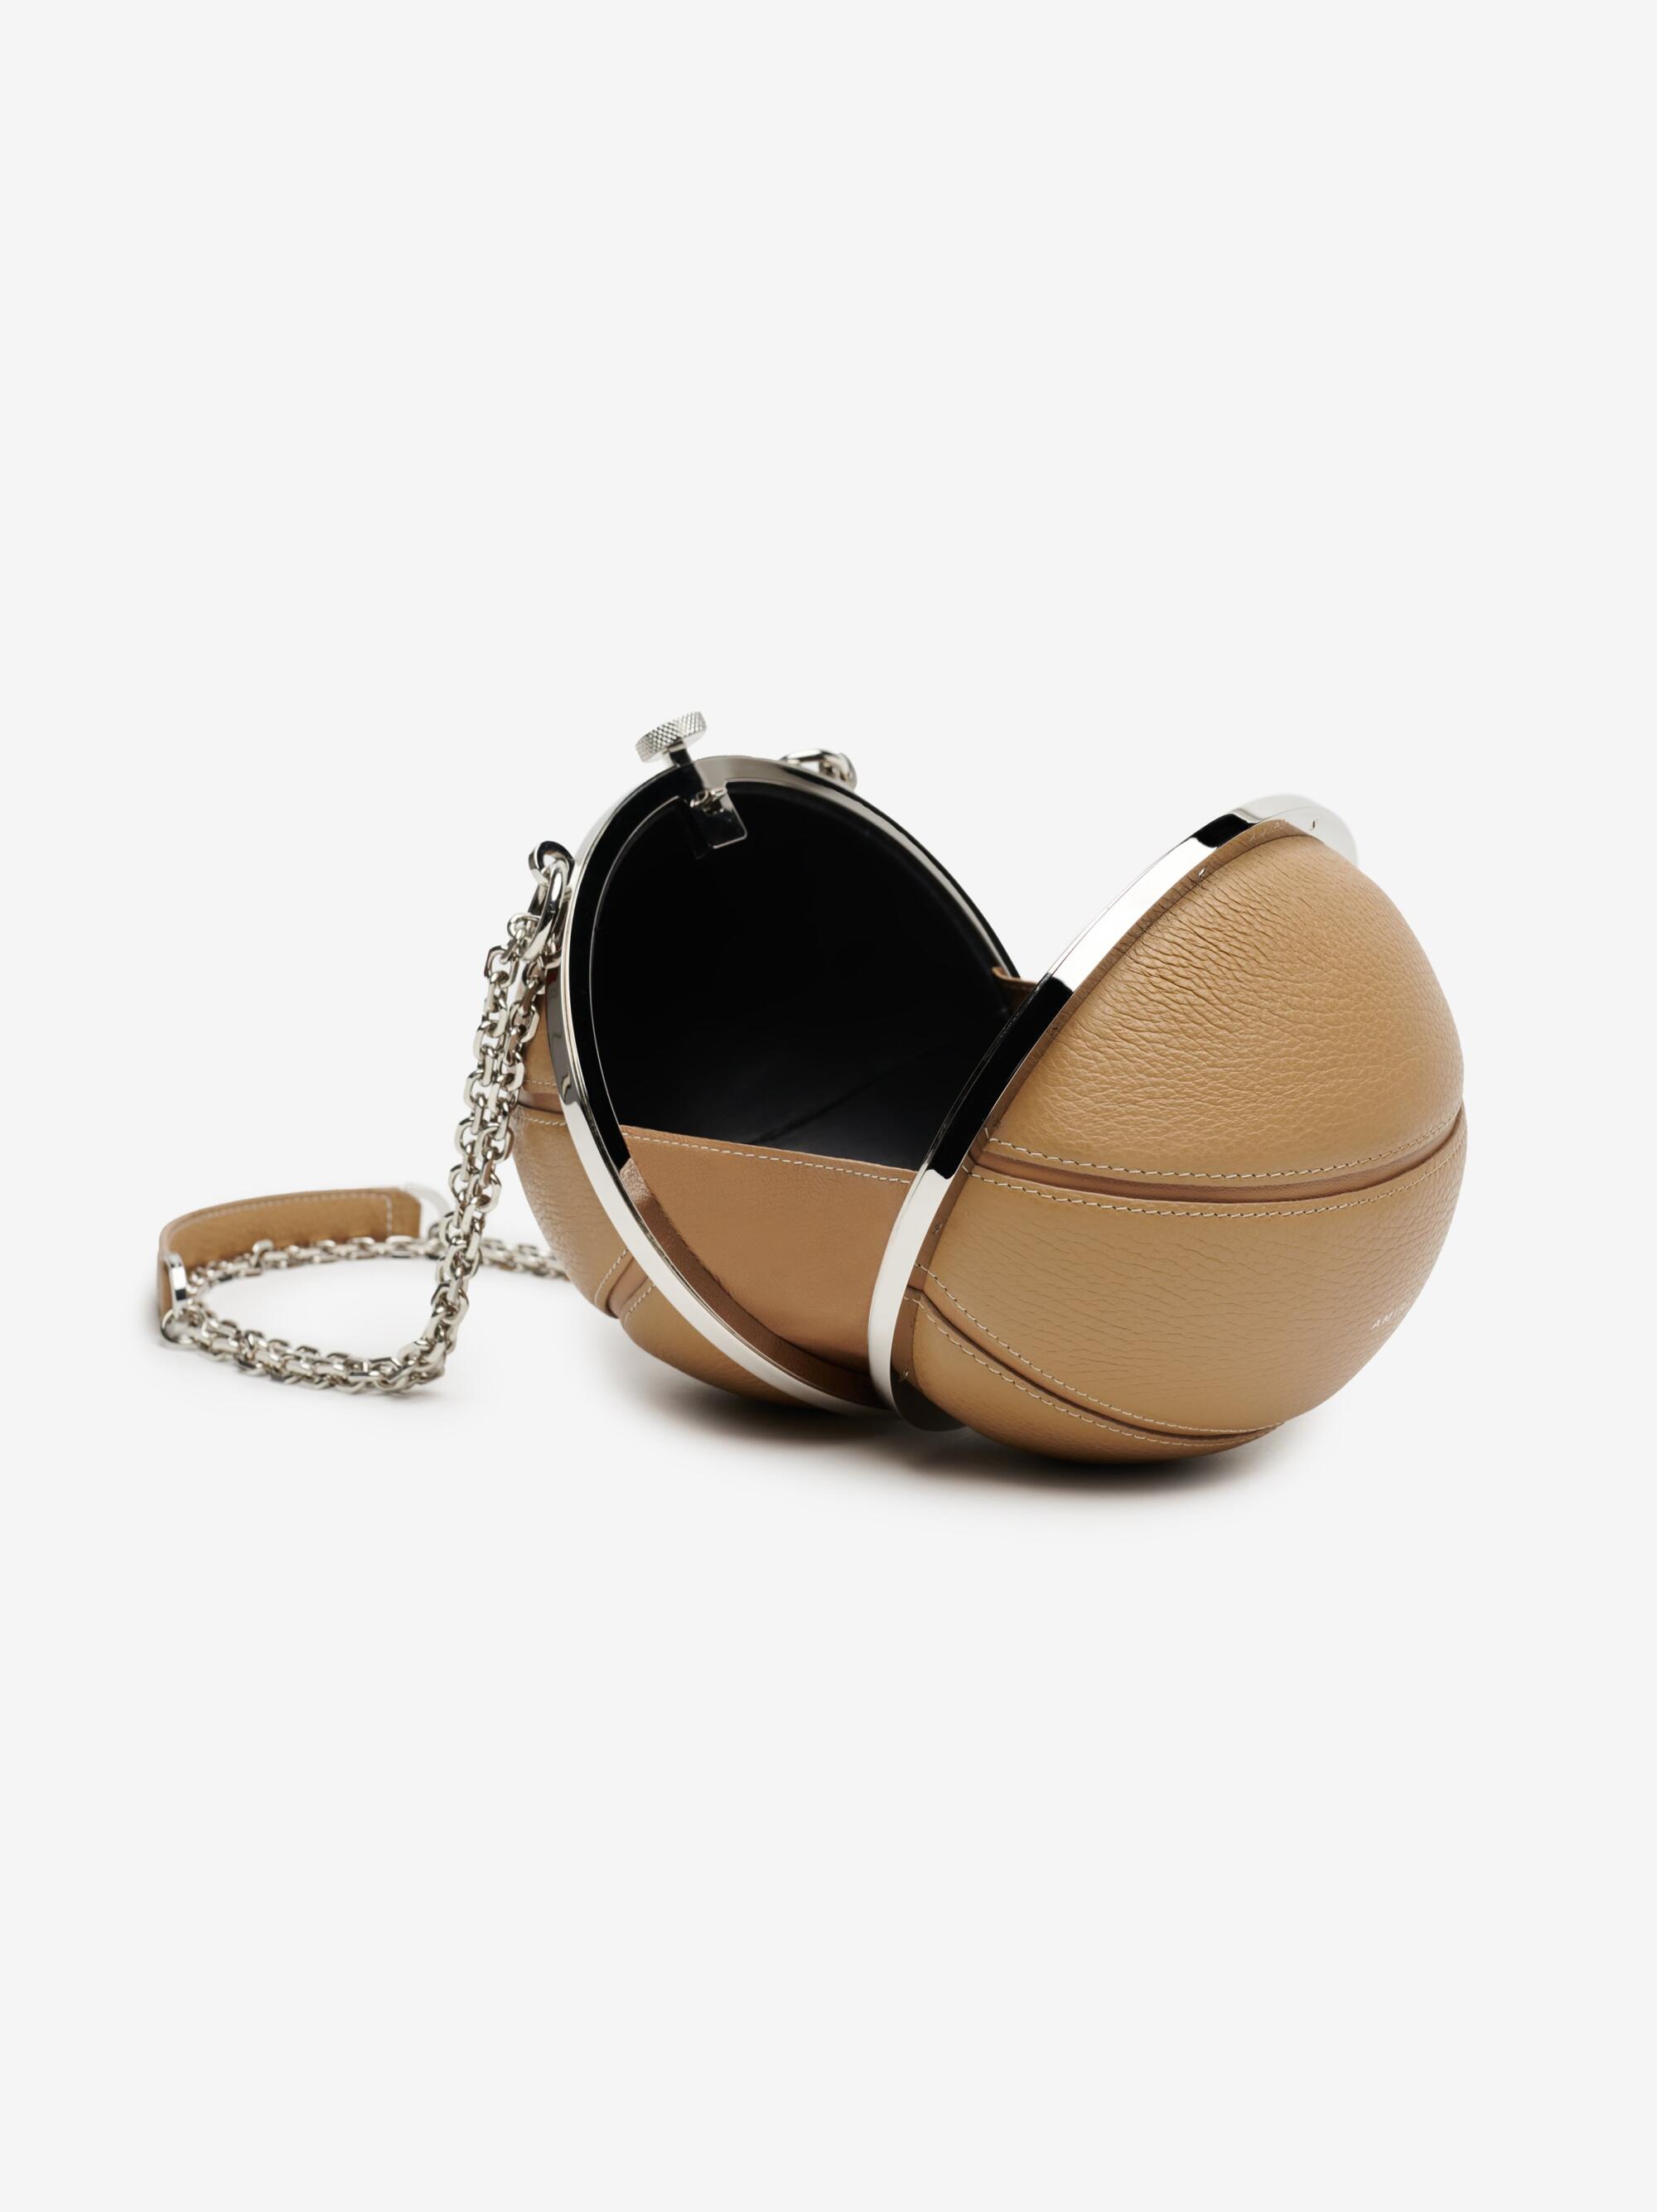 Amiri's nappa leather basketball bag